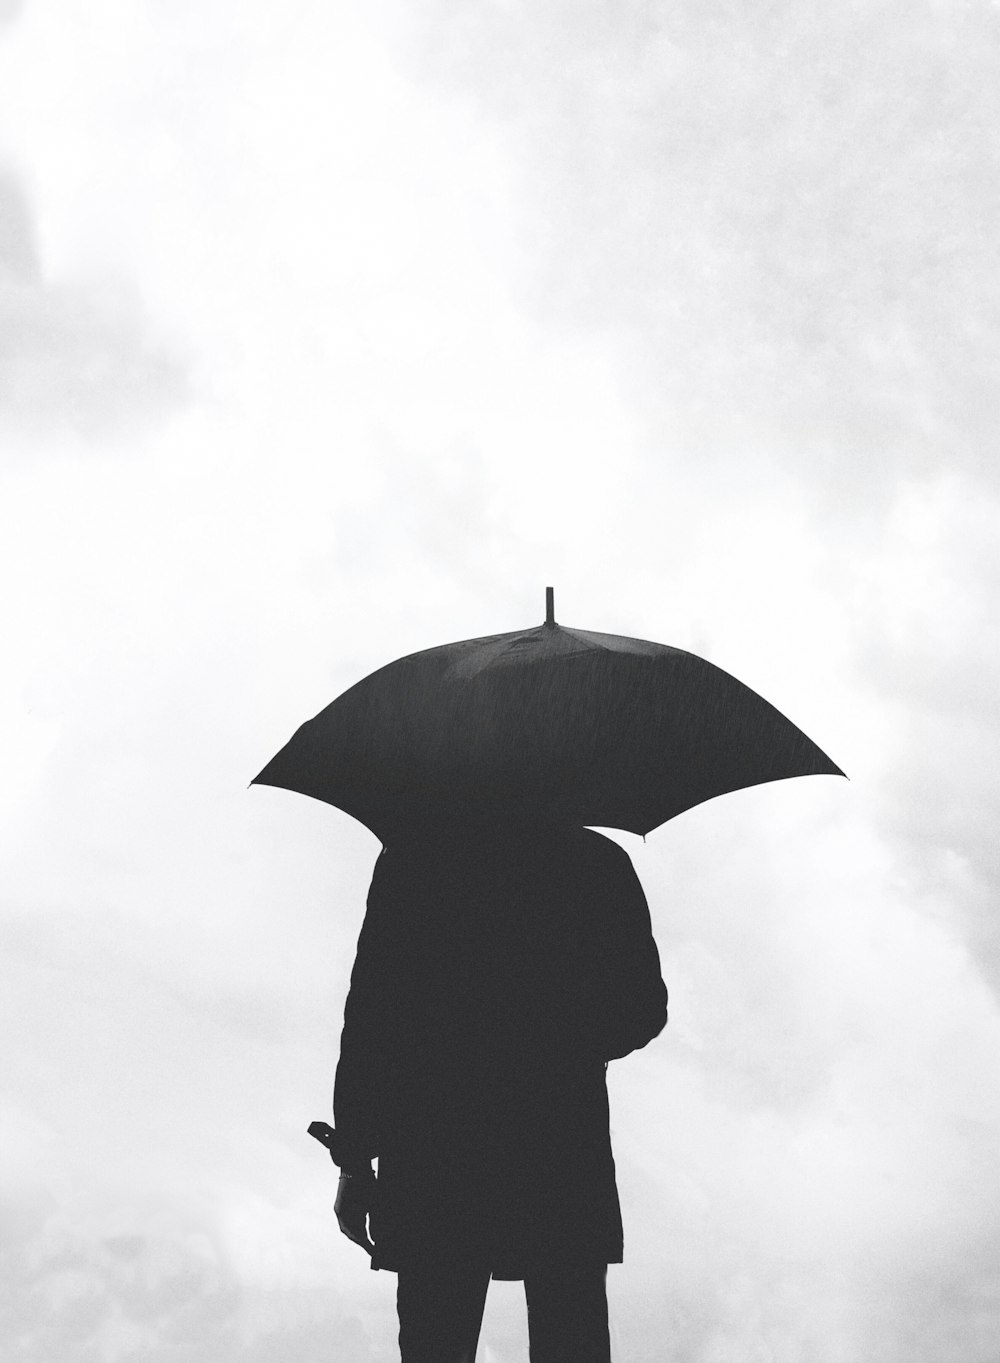 silueta de persona bajo paraguas bajo cielo nublado